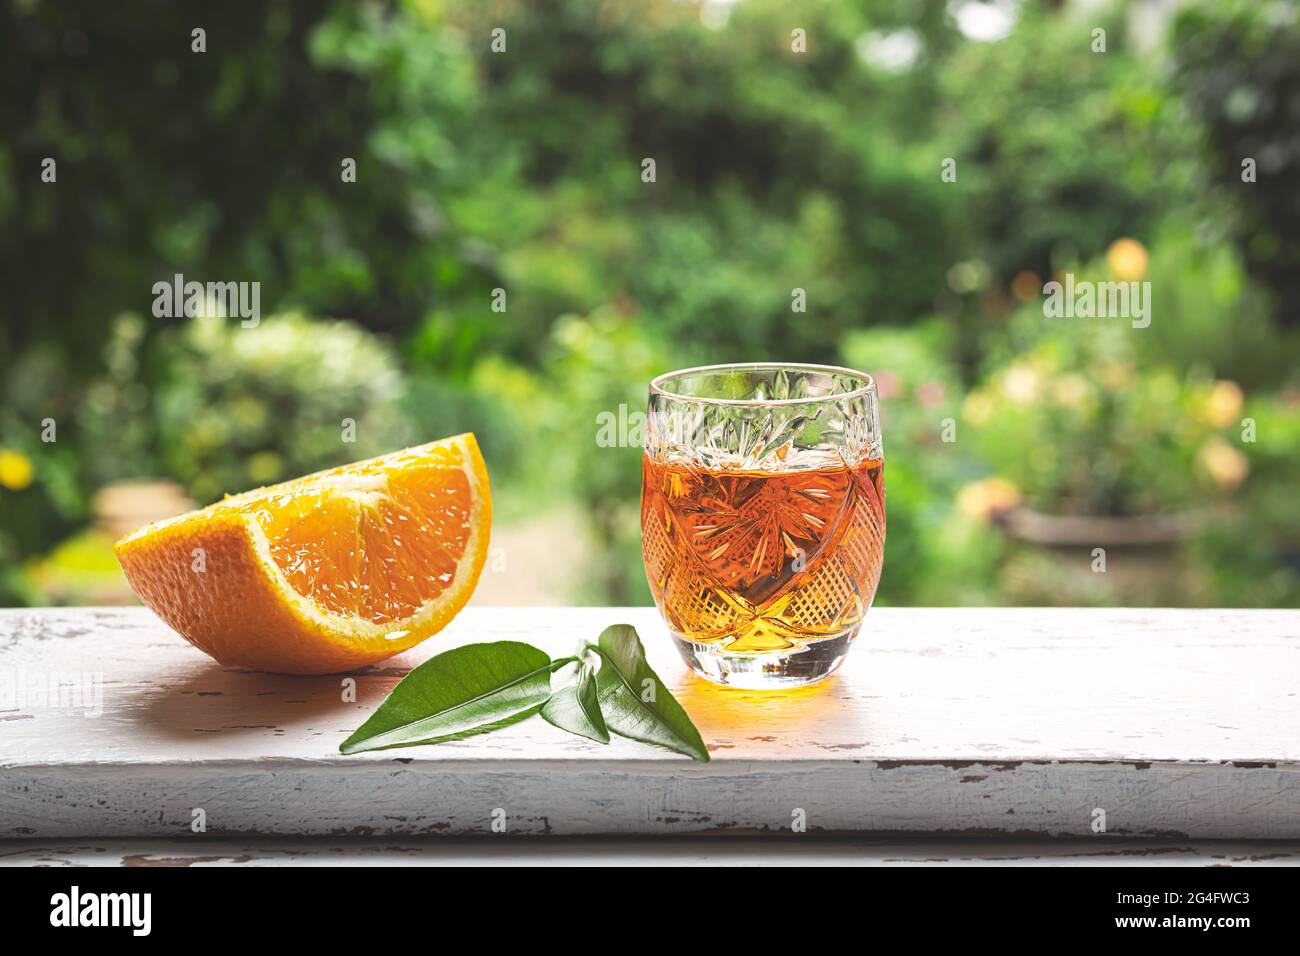 Une photo de liqueur traditionnelle belge de mandarine sur une bordure de fenêtre sur la toile de fond d'un jardin d'été Banque D'Images